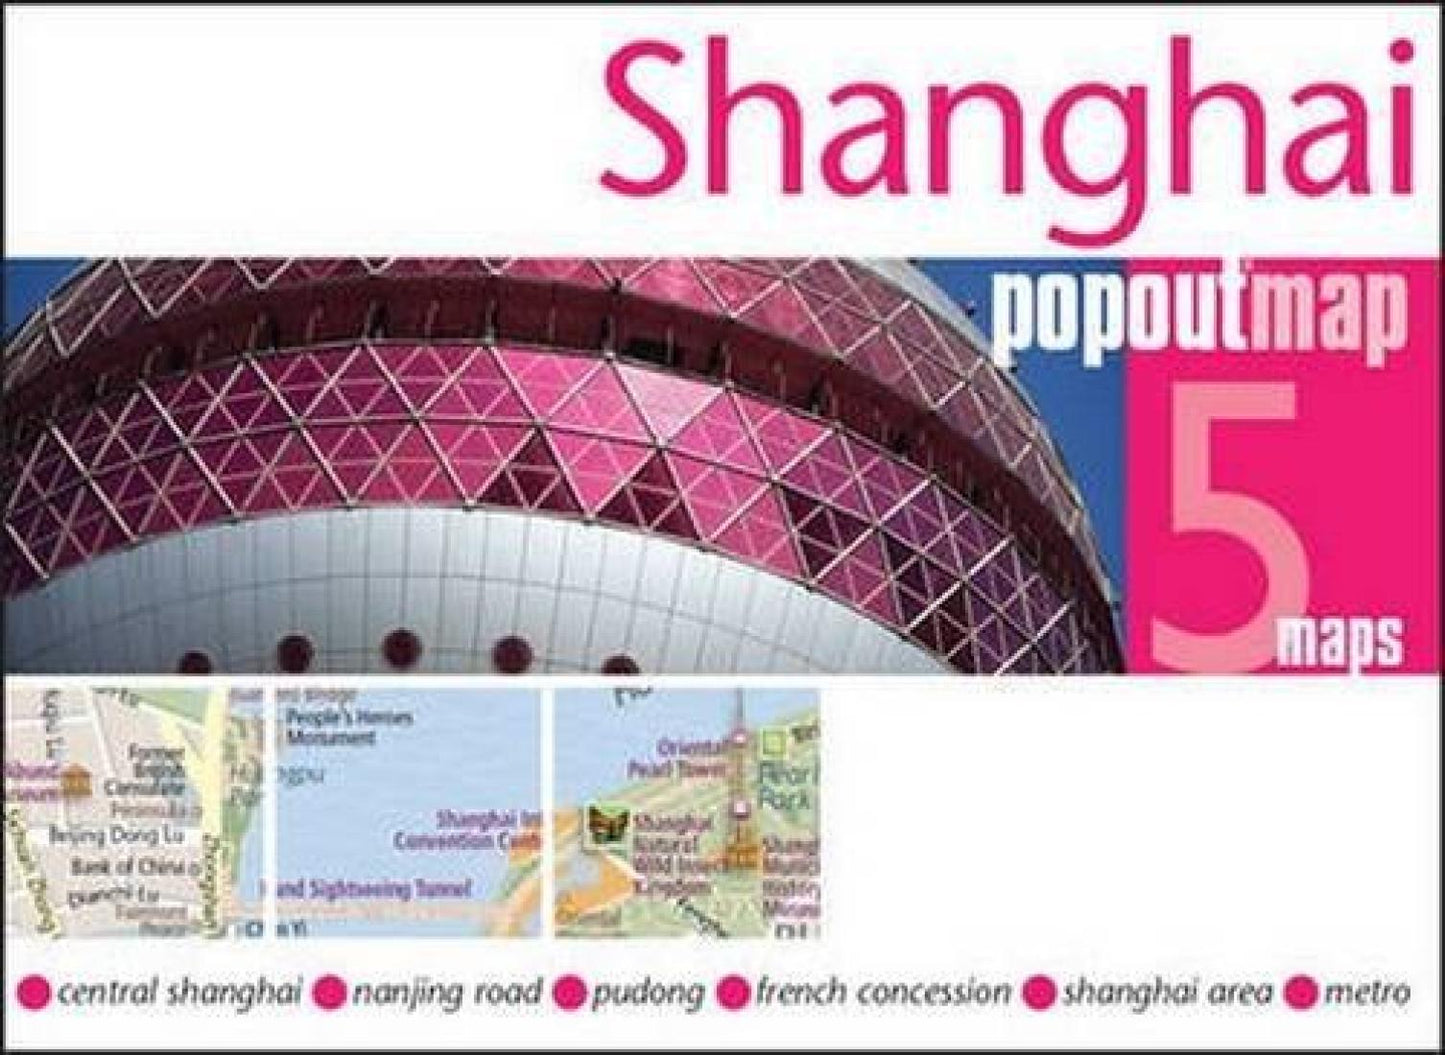 Shanghai : popoutmap : 5 maps